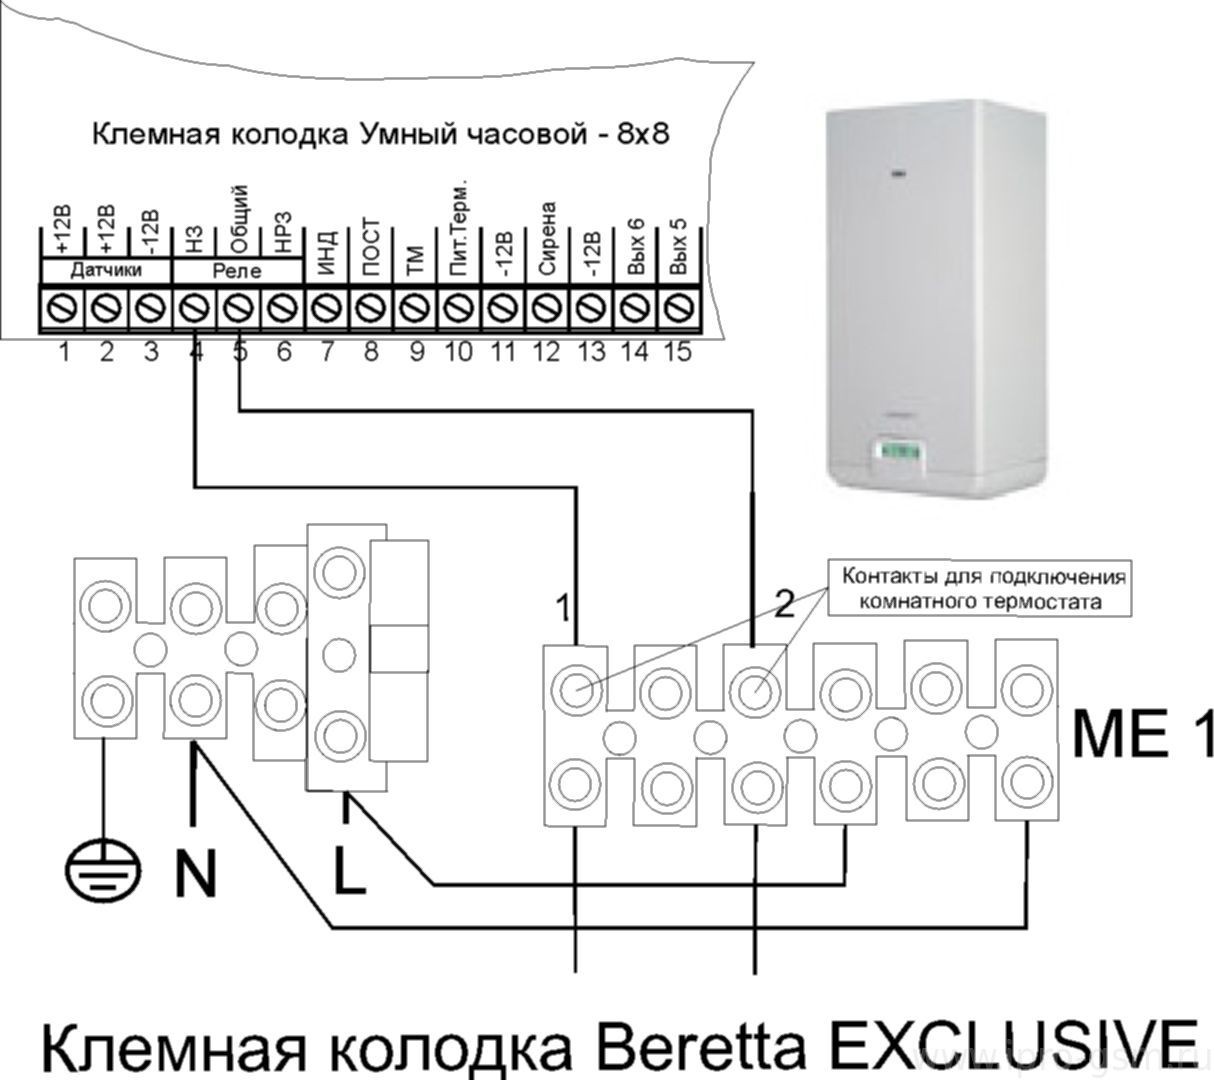 Схема подключения Часовой 8х8 к котлу Beretta Exclusive